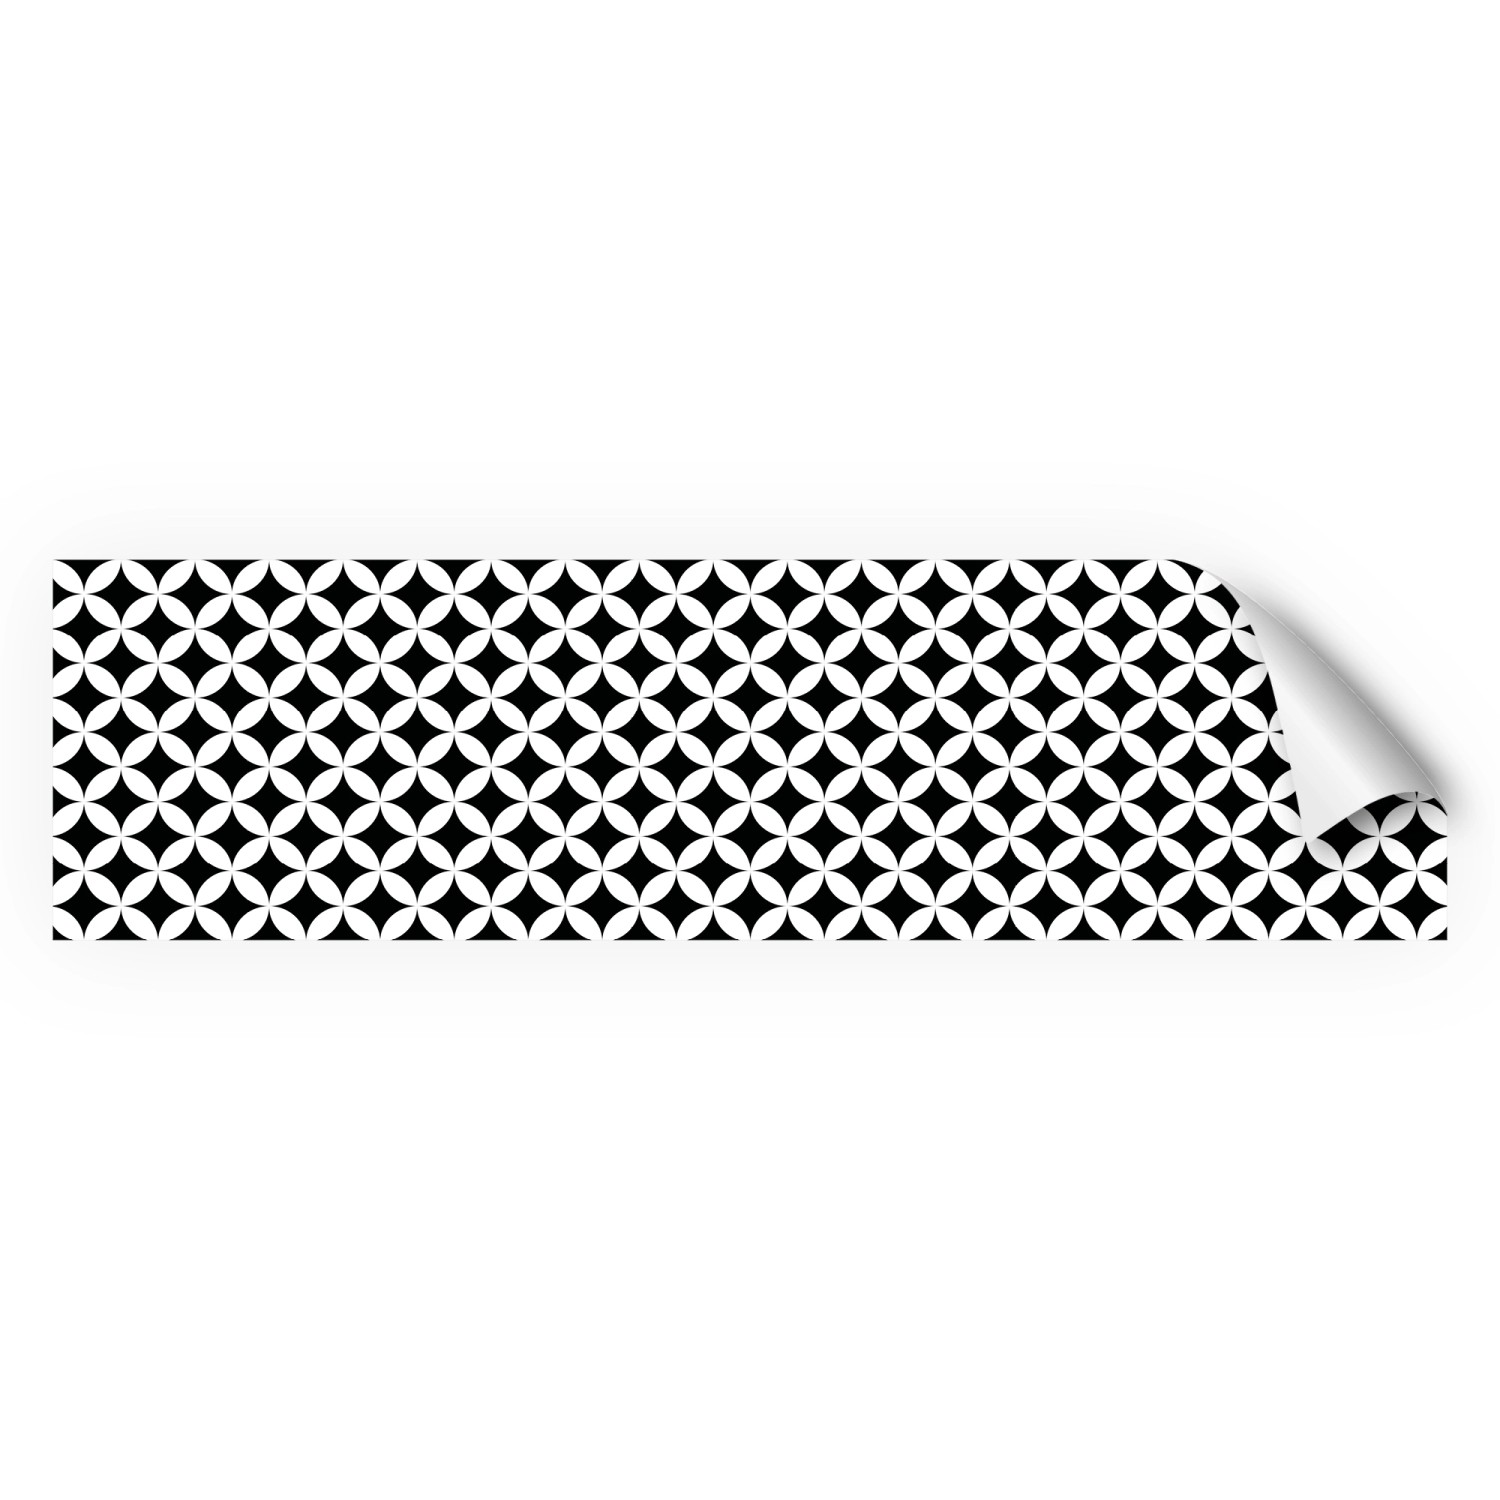 Myspotti Küchenrückwandfolie Chadi Selbstklebend 220 cm x 60 cm Schwarz-Weiß